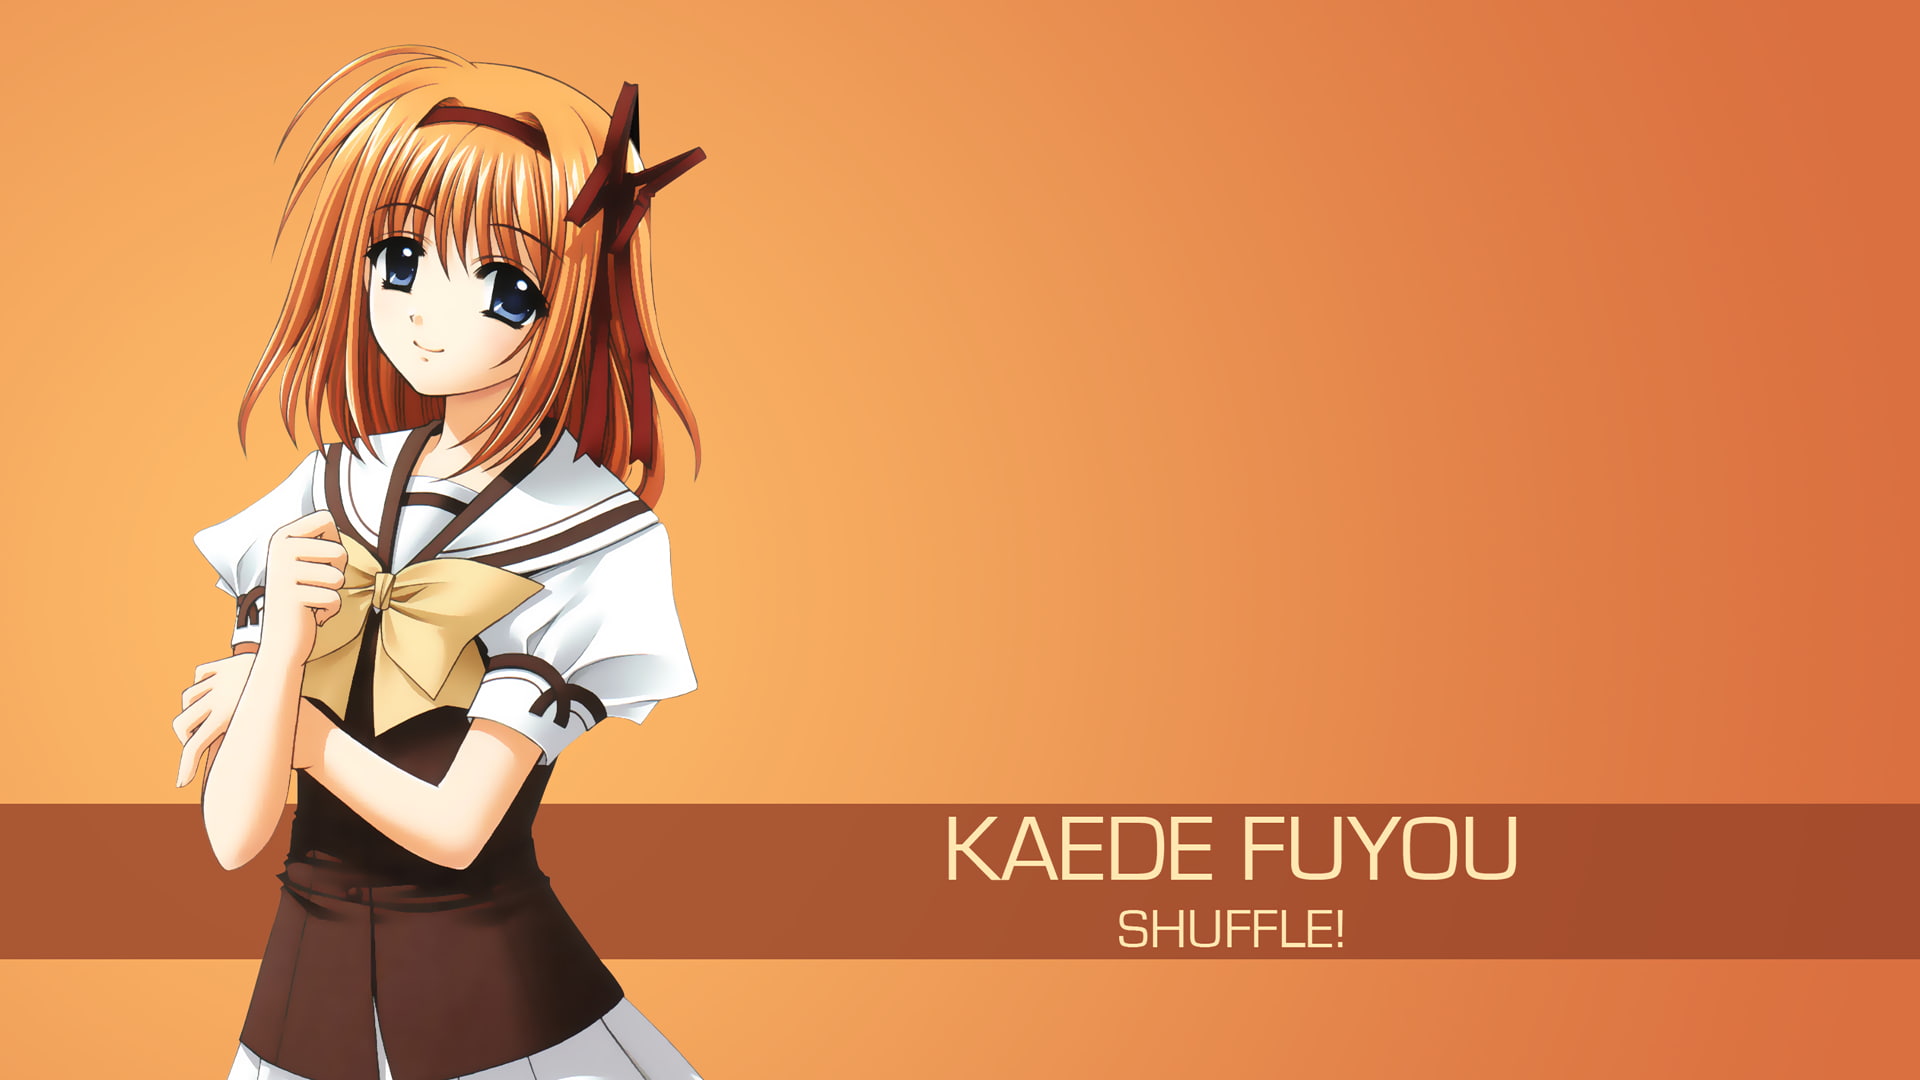 anime girls, Shuffle!, Fuyou Kaede, women, one person, copy space